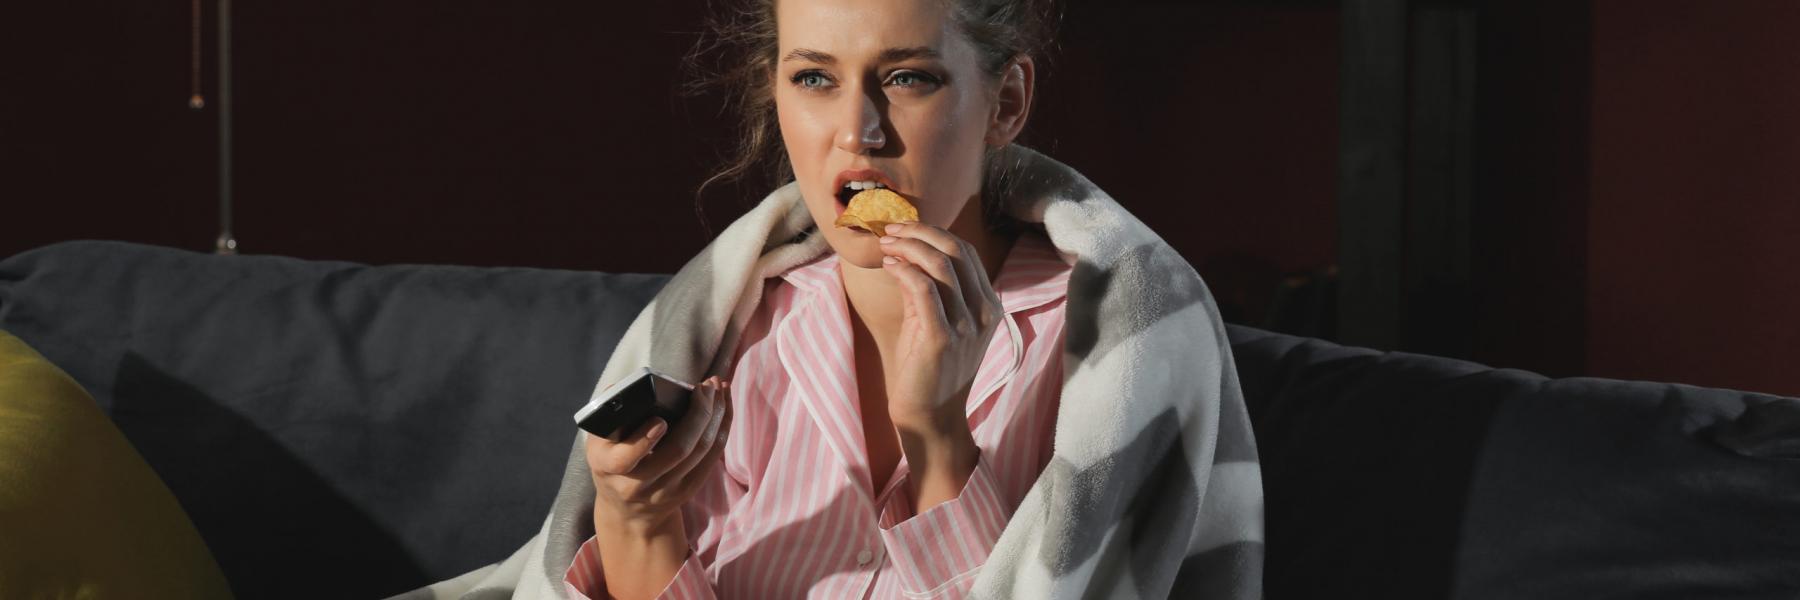  العلاقة بين الإفراط في مشاهدة التلفزيون وتناول الطعام